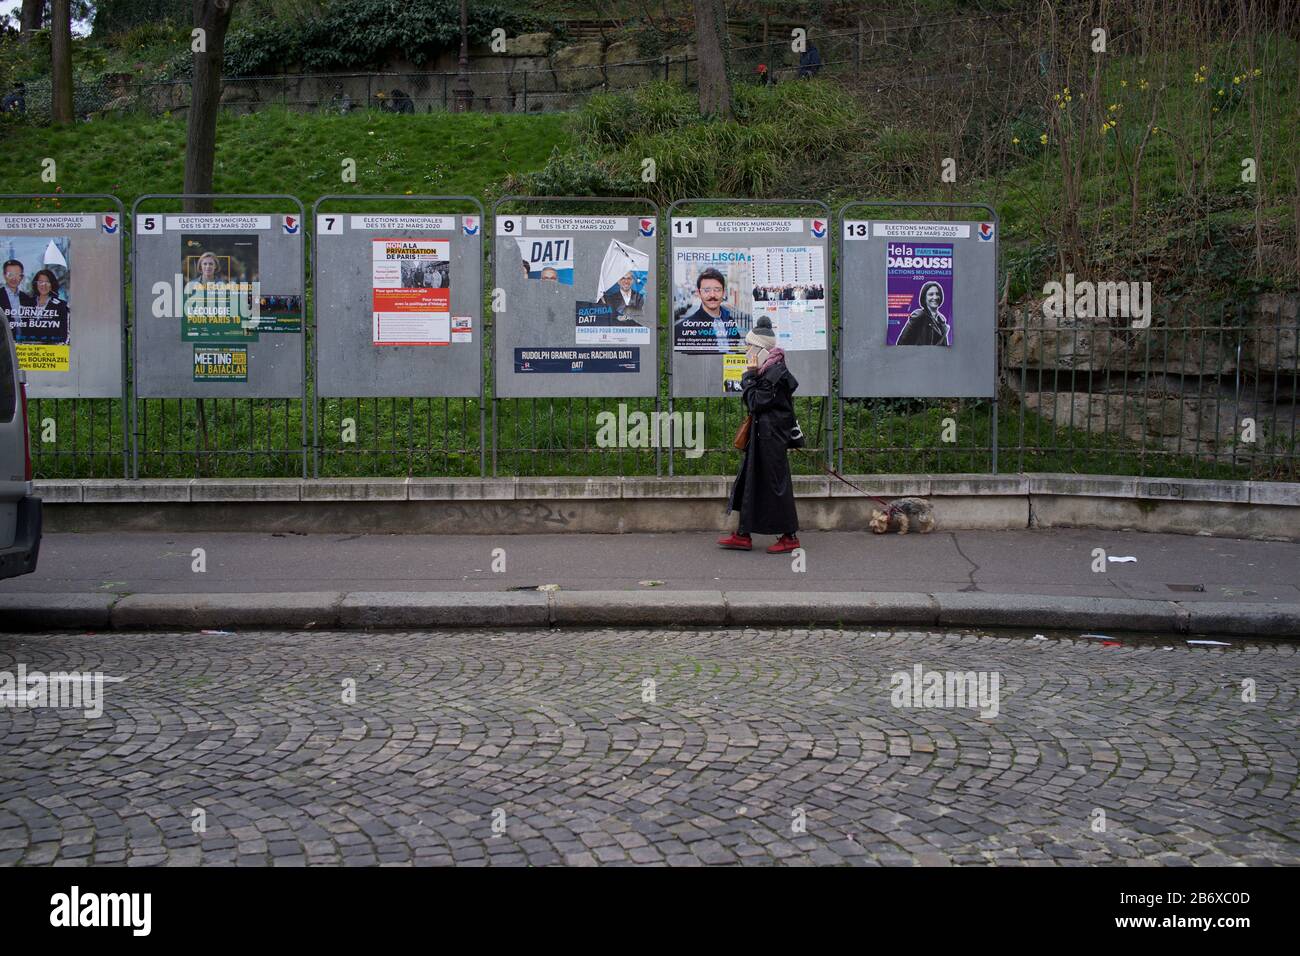 La mujer pasa por paneles de exhibición que muestran candidatos electorales que se presentan en las elecciones municipales francesas, rue Ronsard, Montmartre, 75018 París, Francia, marzo de 2020 Foto de stock